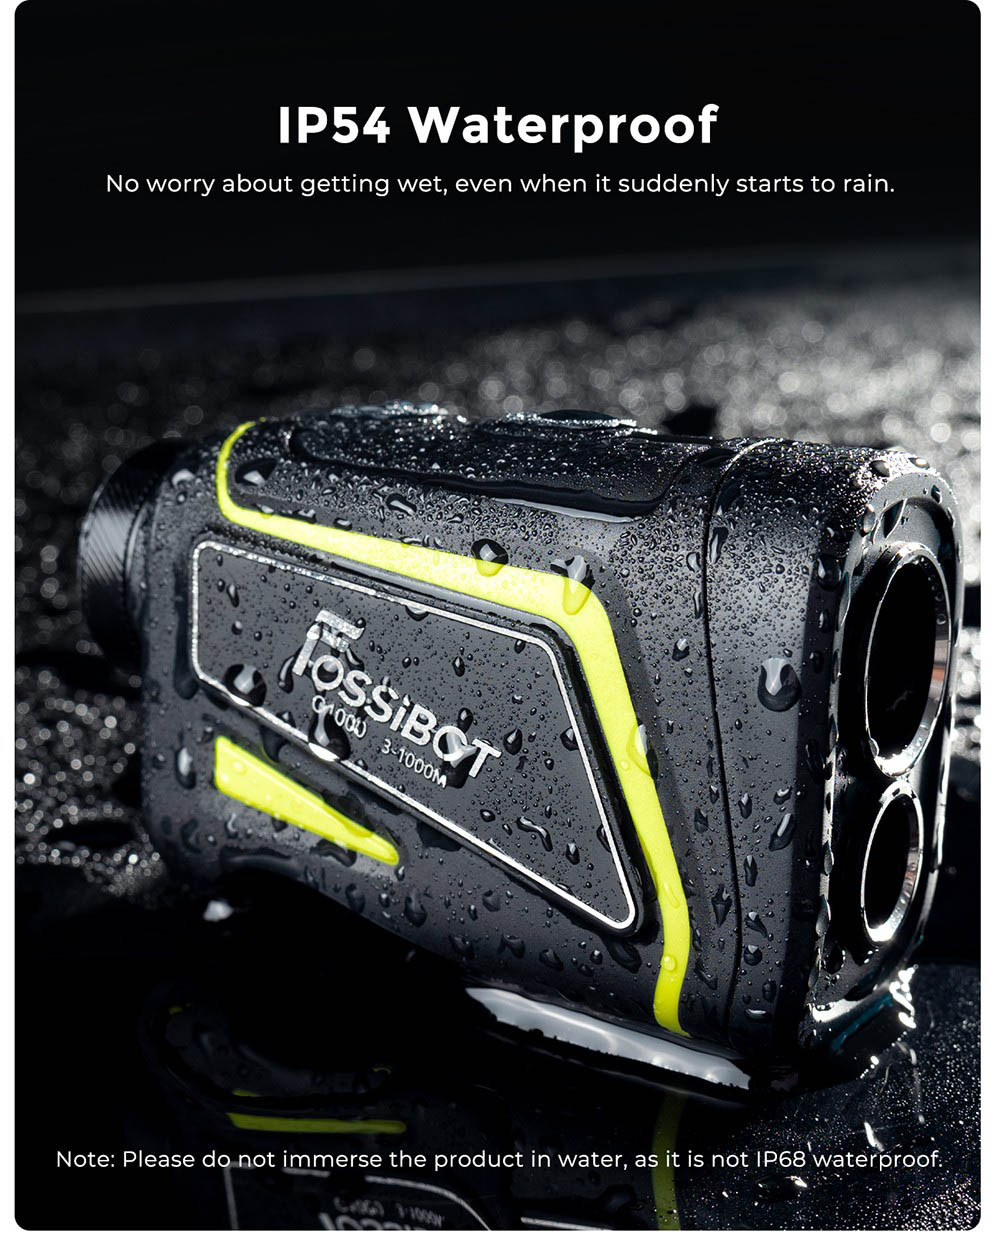 FOSSiBOT C1000 Pro Golf Rangefinder, 6 Messmodi, IP54 Wasserdicht - Grün